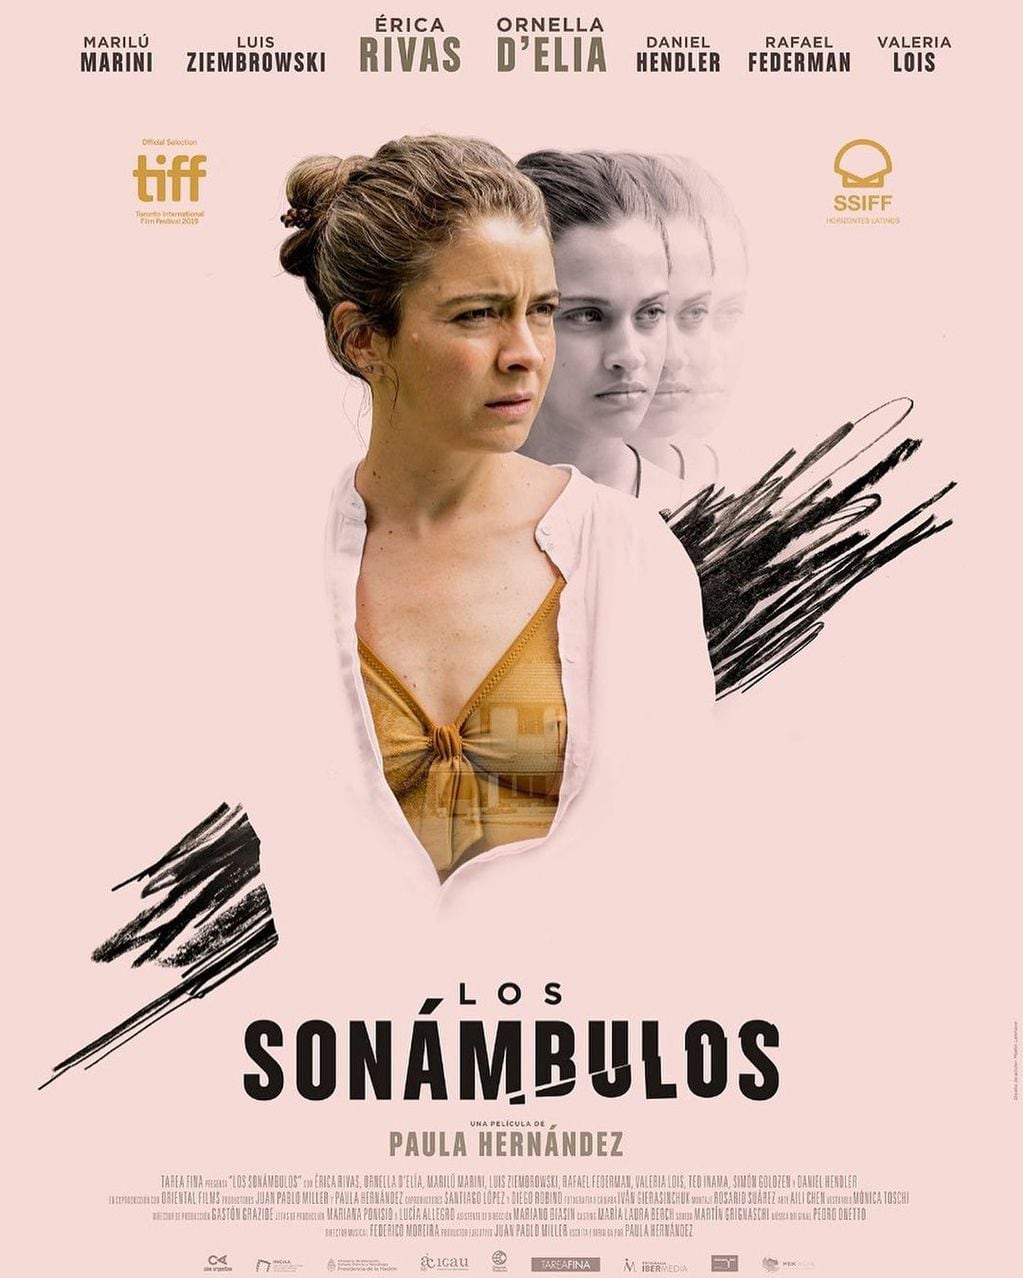 Ornella D'elía aparece junto a Erica Rivas en el afiche de "Los sonámbulos".